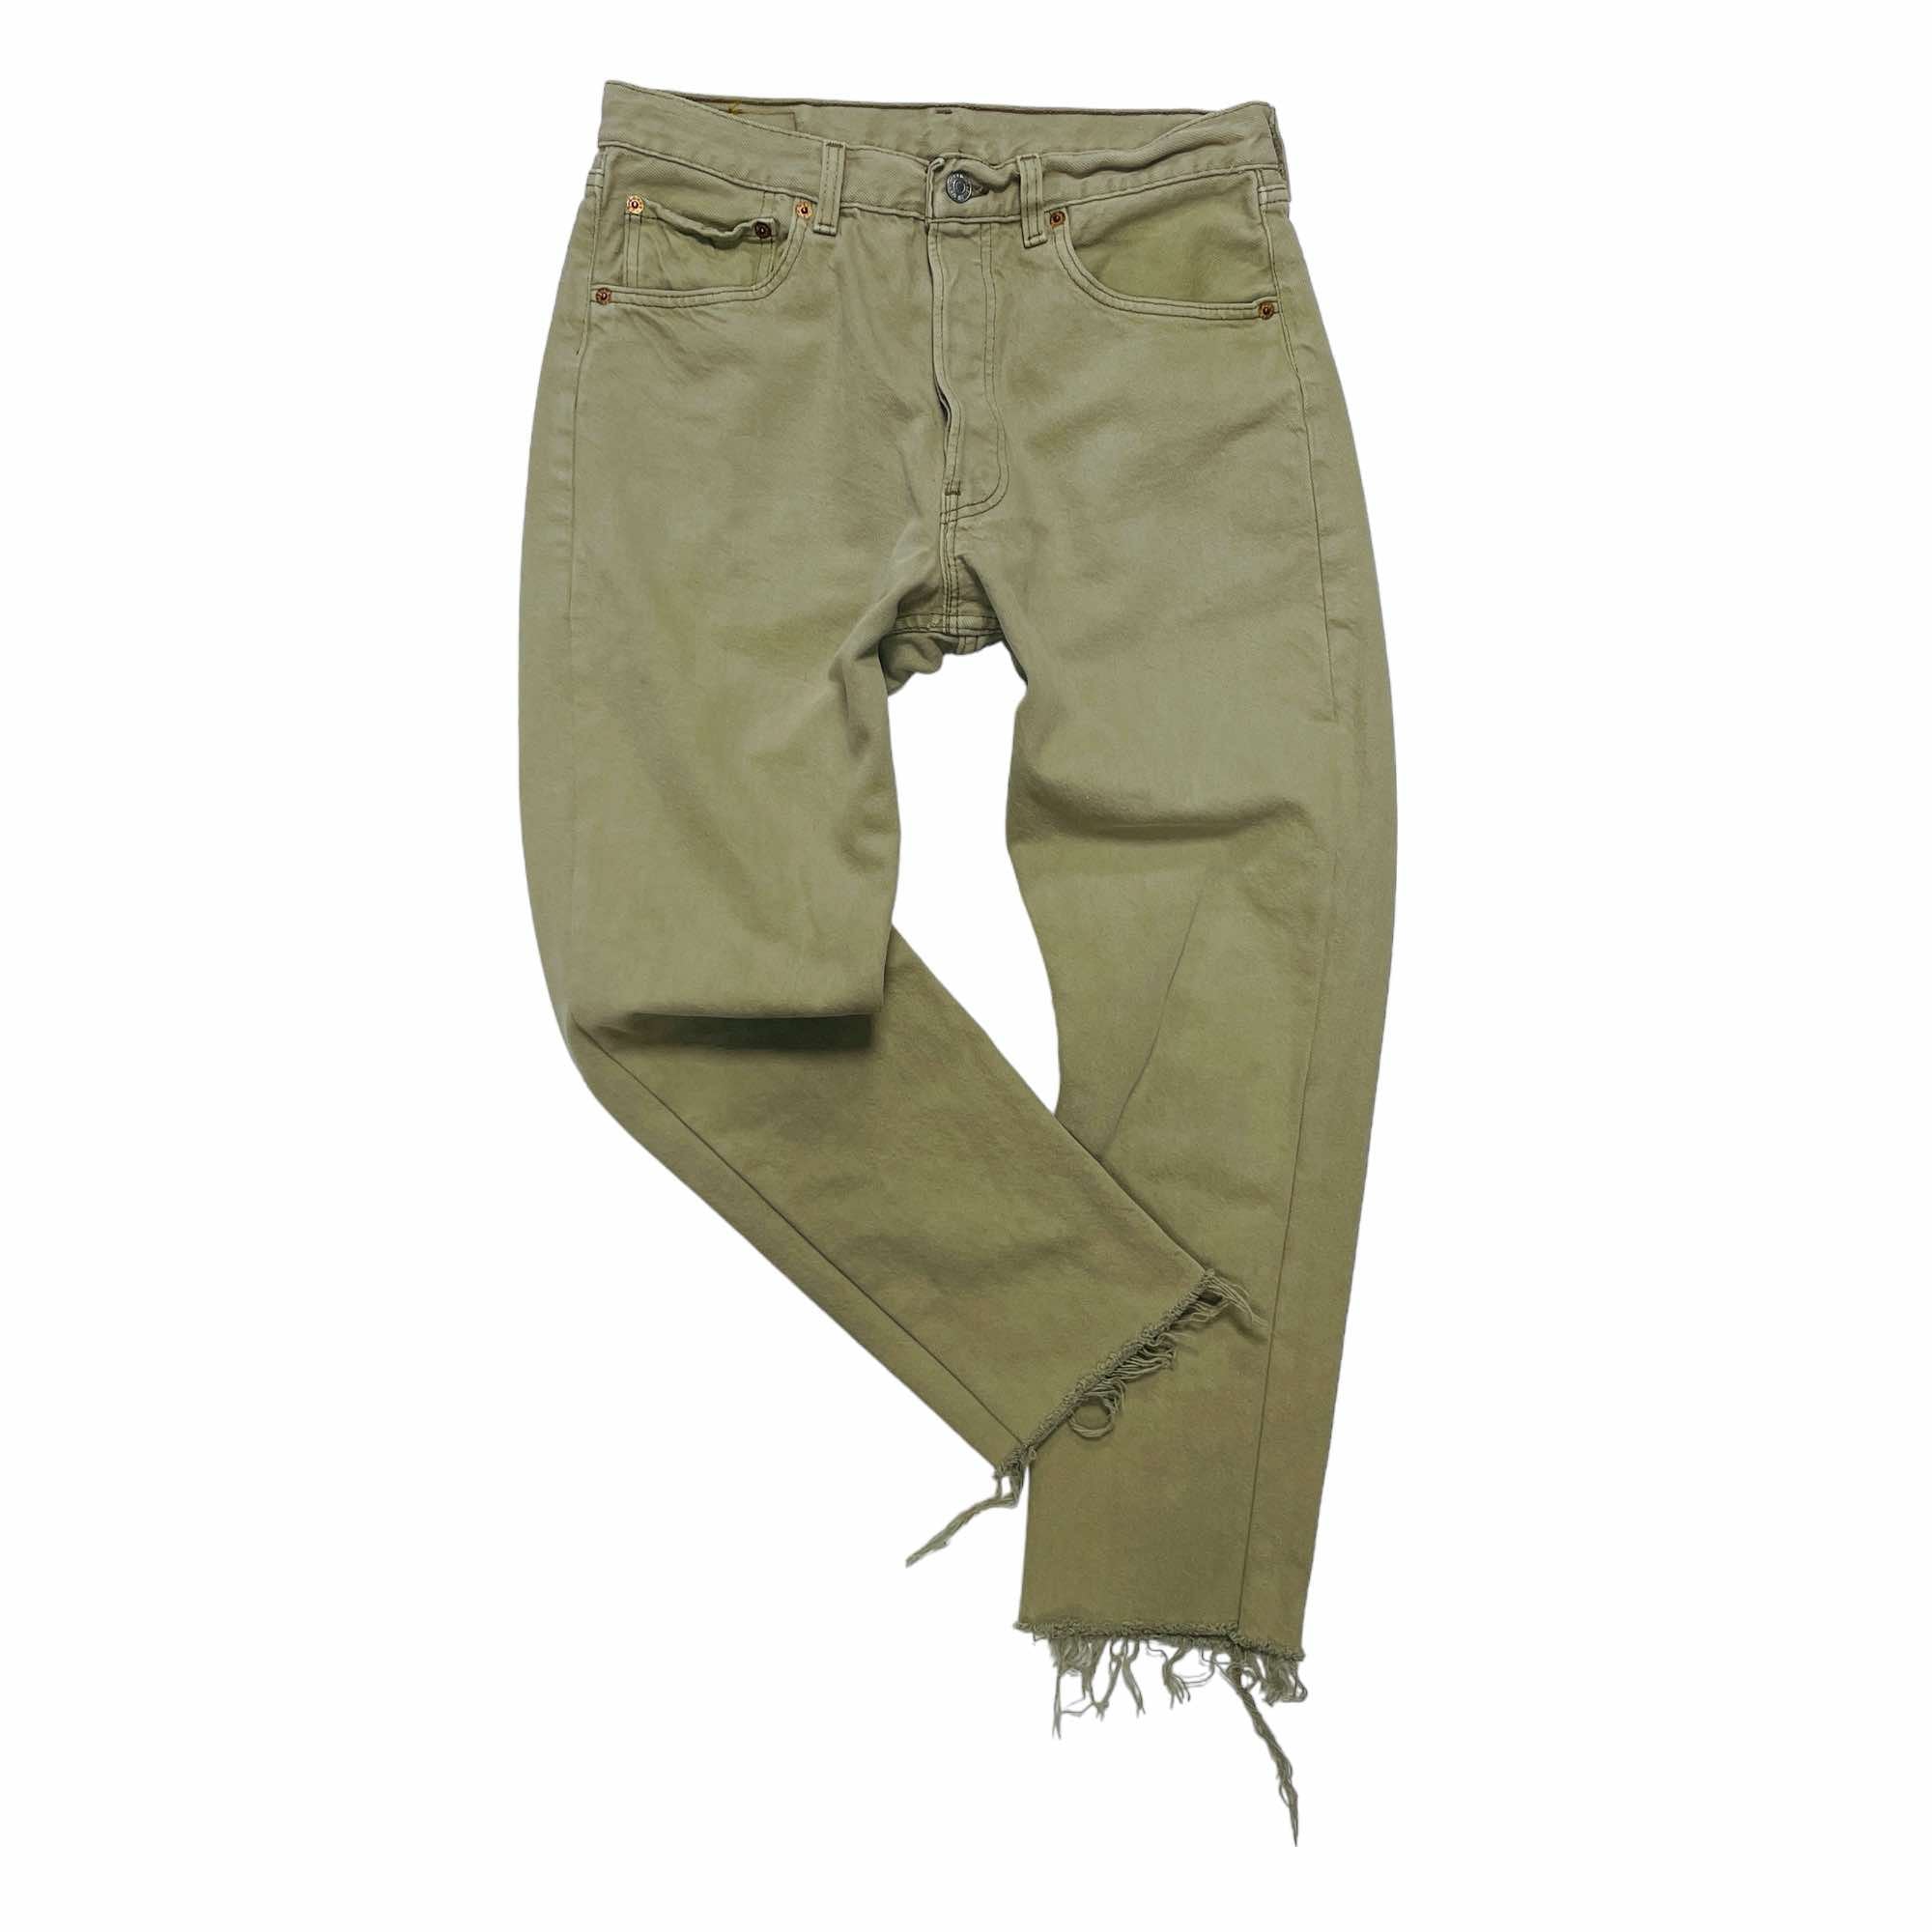 Levi's 501 Cut Denim Jeans - W32 L26